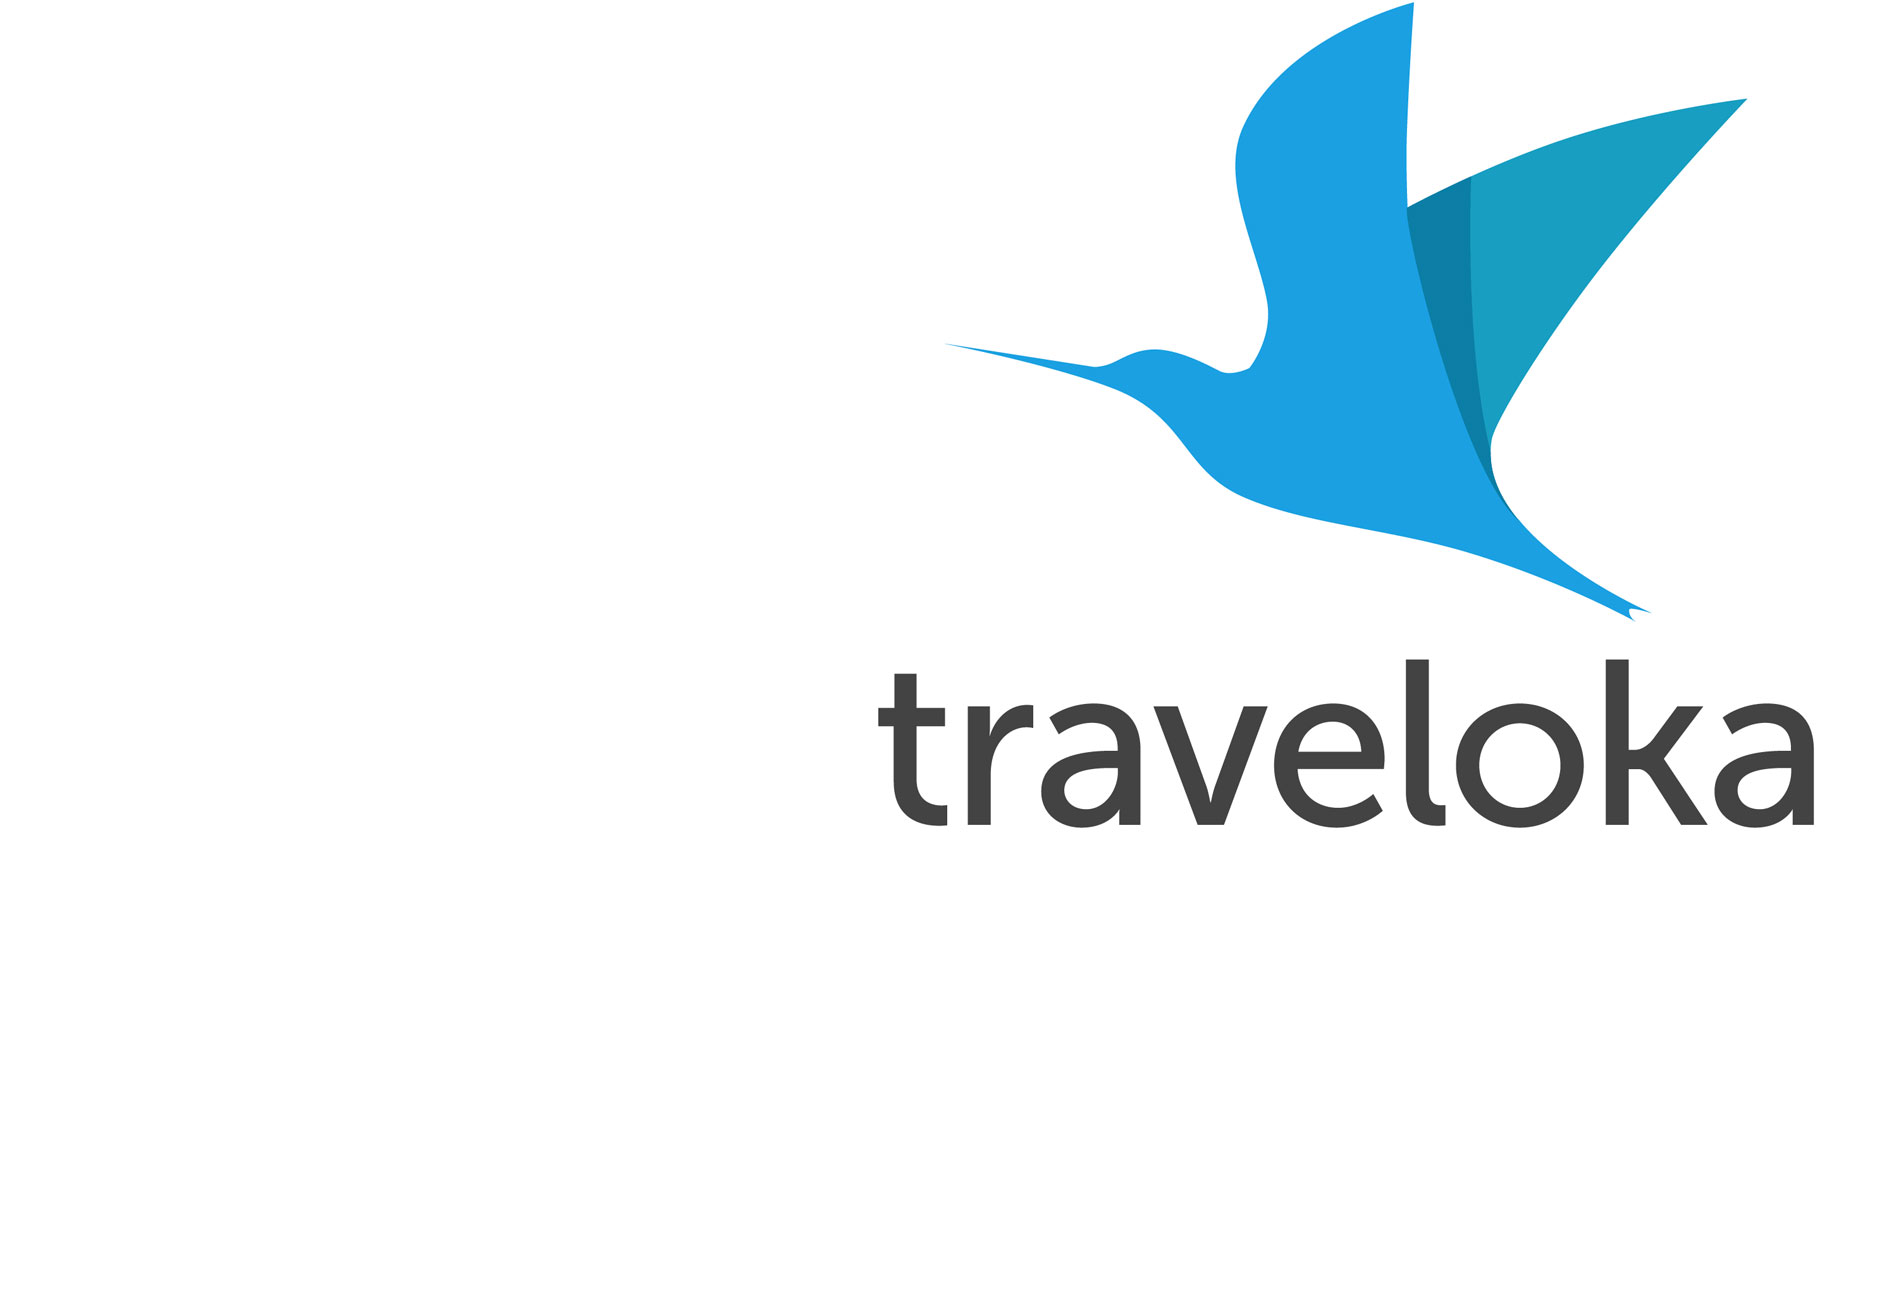 Traveloka Logos.